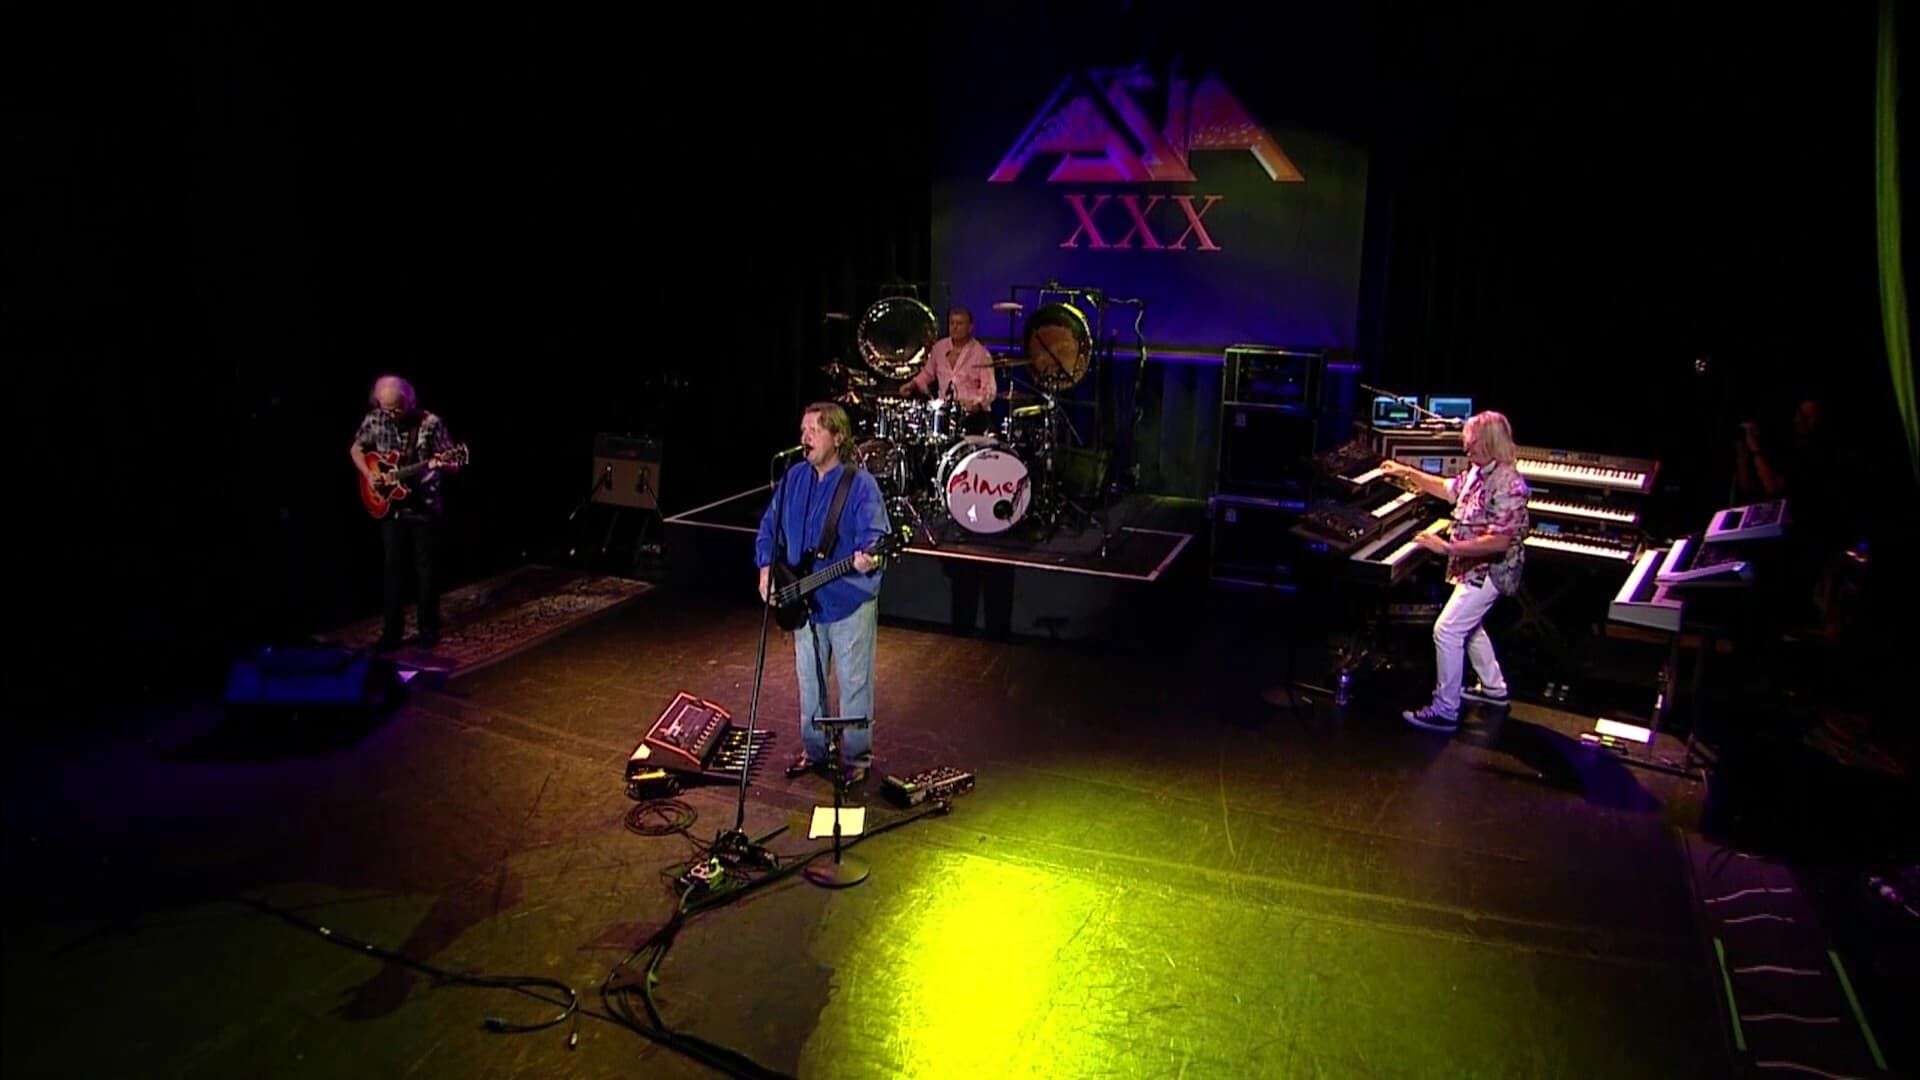 Asia - Axis XXX - Live San Francisco MMXII (2015)